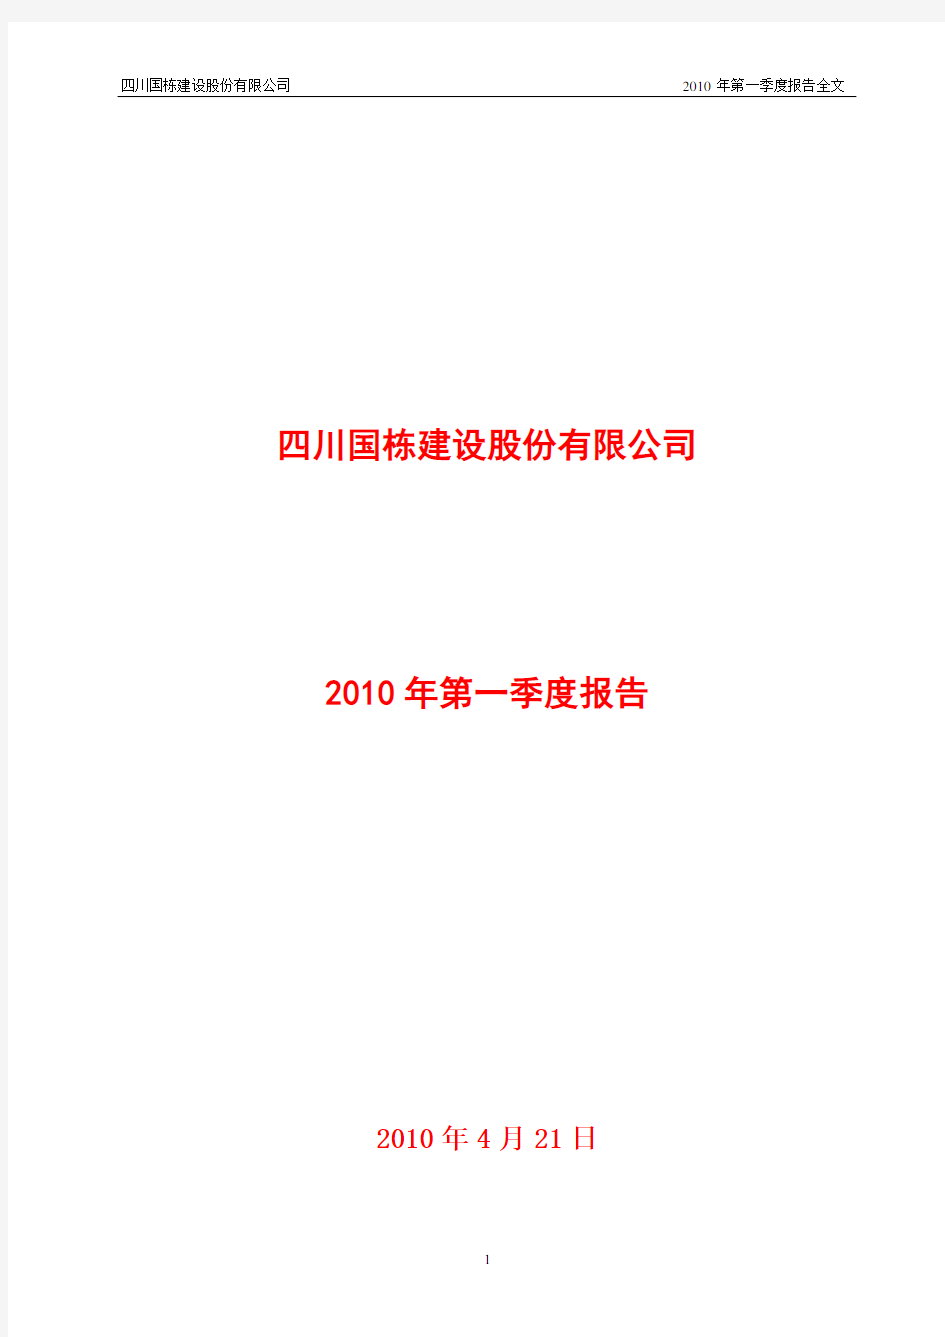 四川国栋建设股份有限公司2010年第一季度报告全文